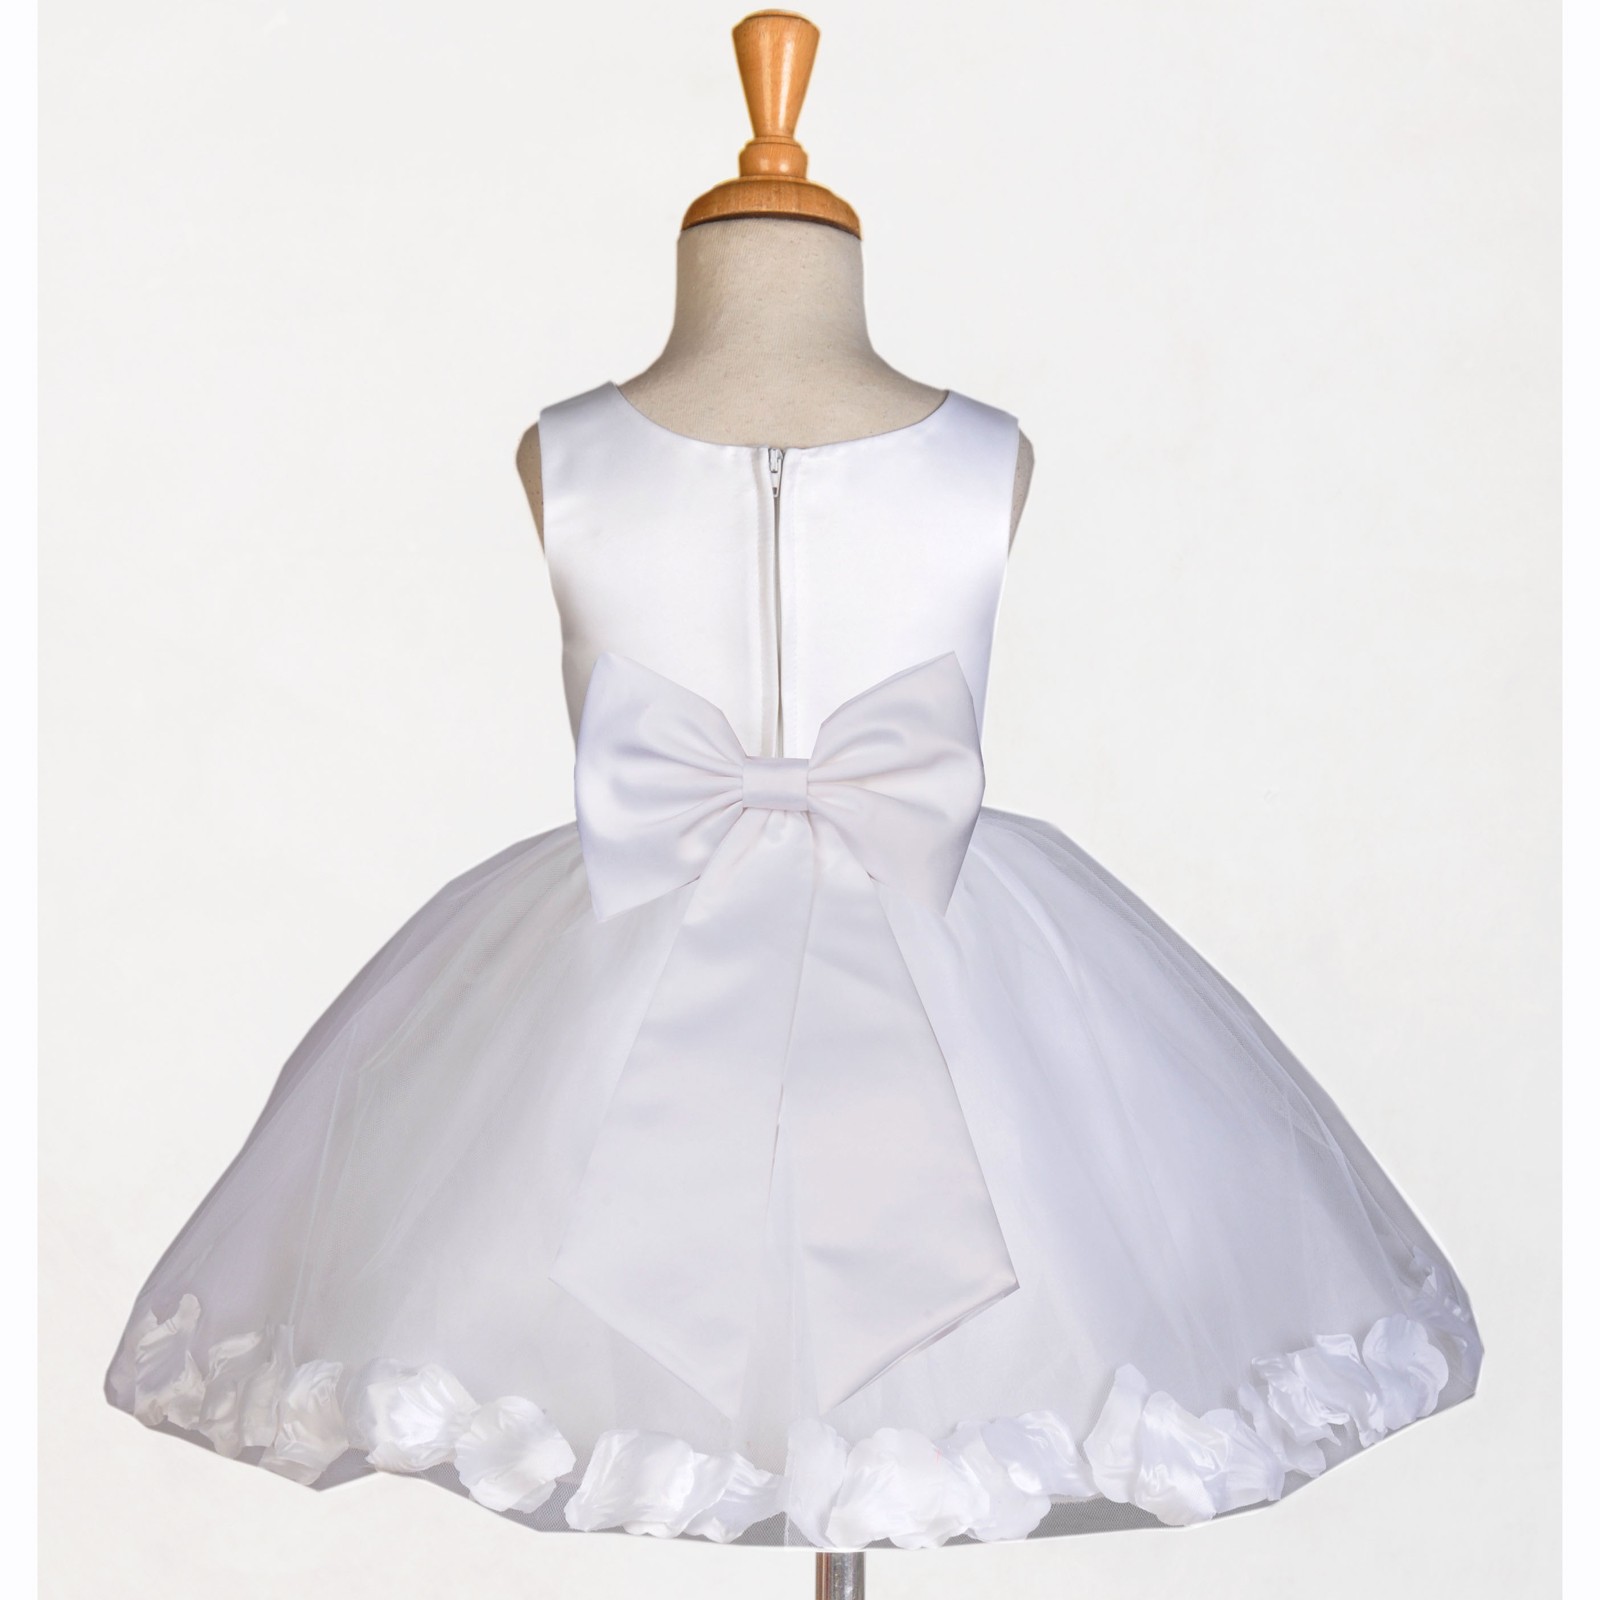 White/White Rose Petals Tulle Flower Girl Dress Wedding 305T